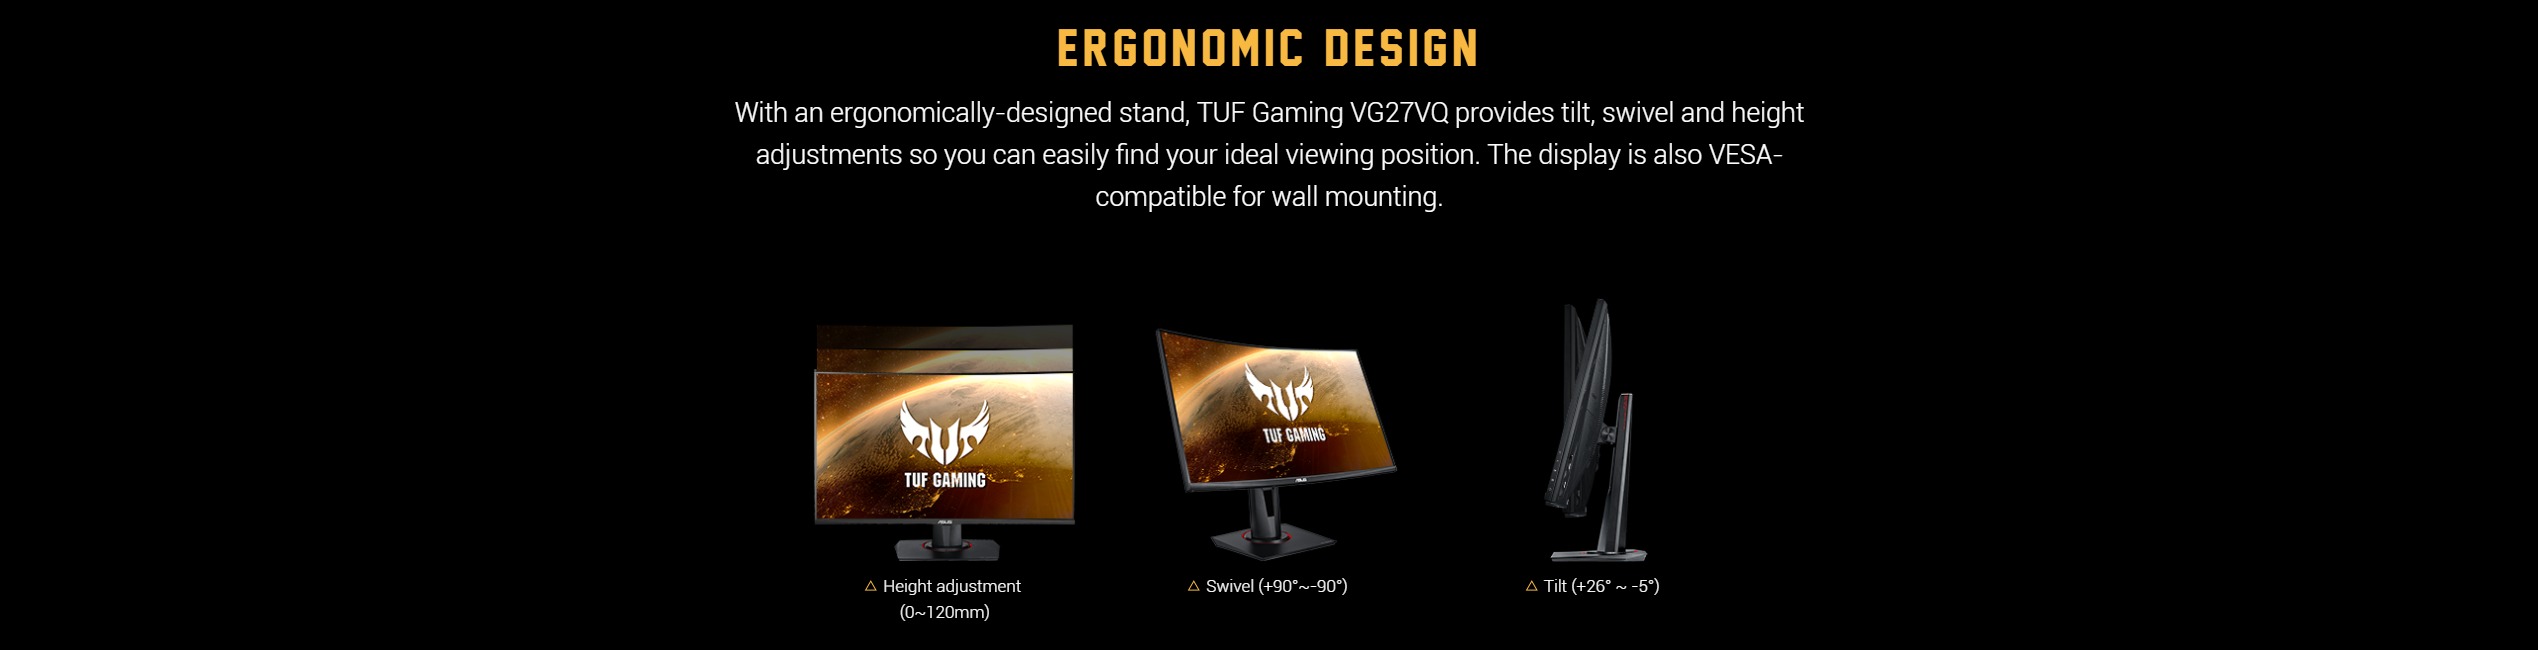 Màn hình ASUS TUF Gaming VG27VQ thiết kế